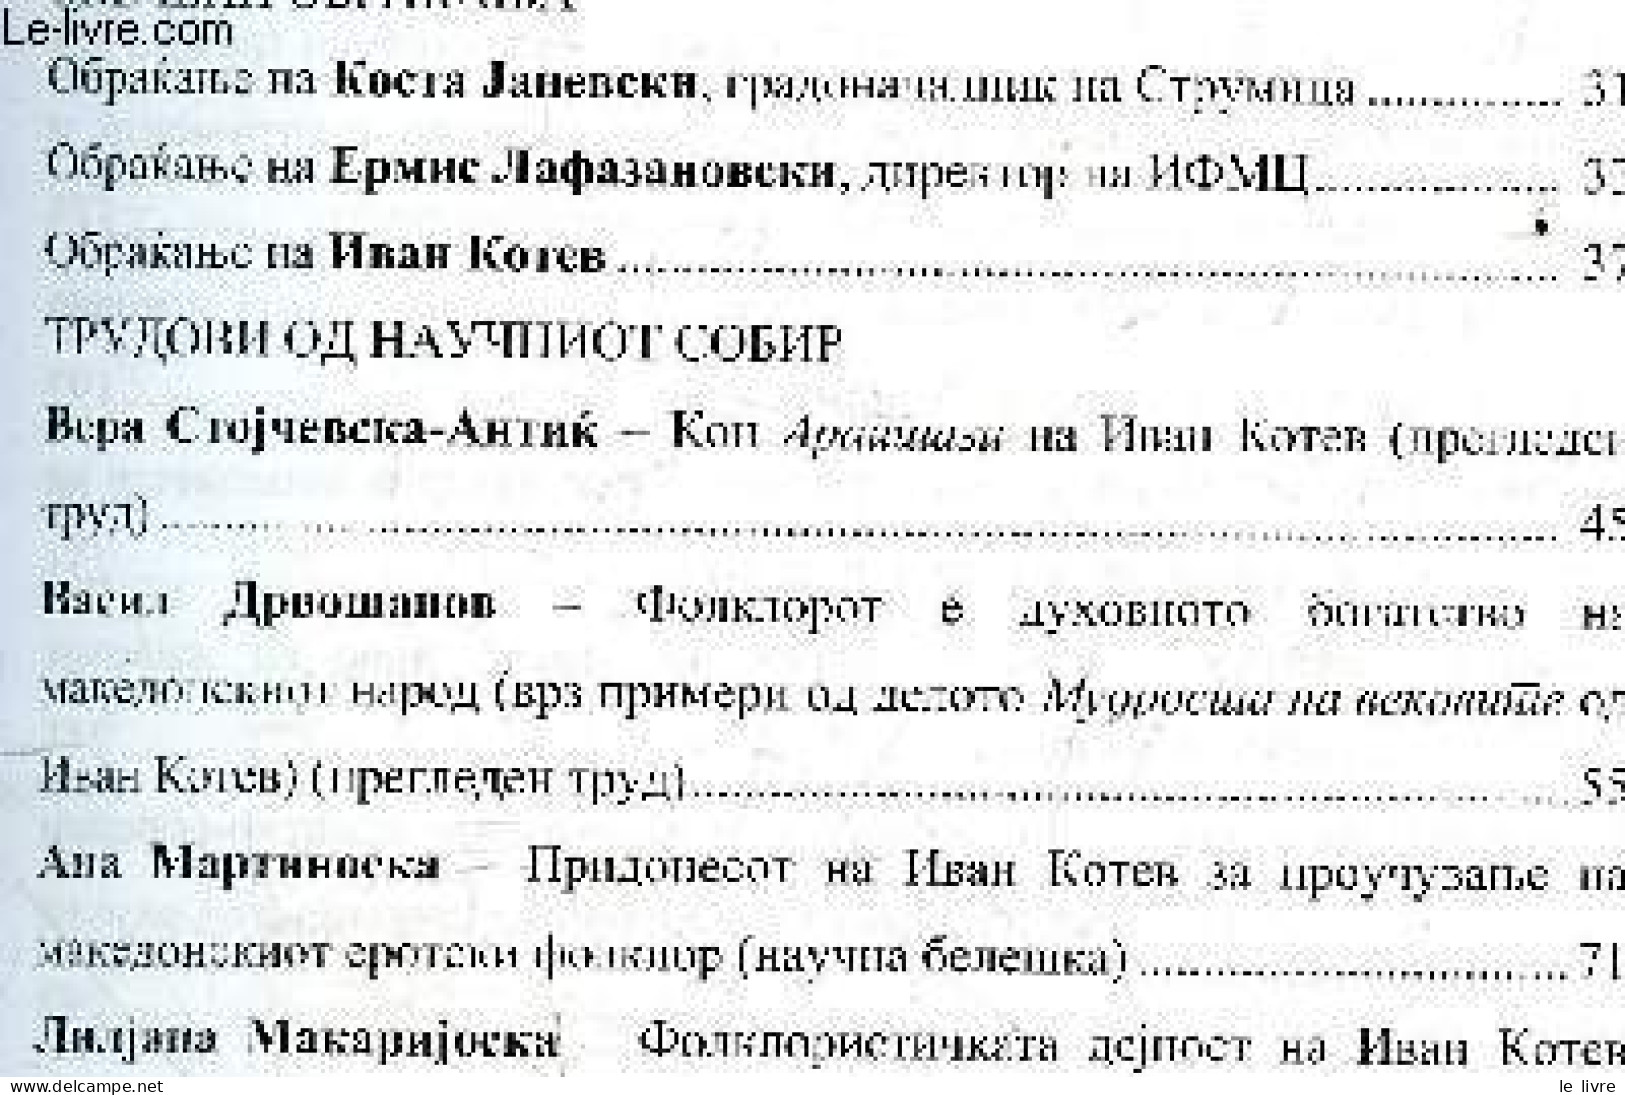 Makedonski Folklor - Godina LIII, Broj 81, Skopje, 2022 - UDC 398 / Folklore Macédonien - Volume 81, Annee LIII / Macedo - Kultur